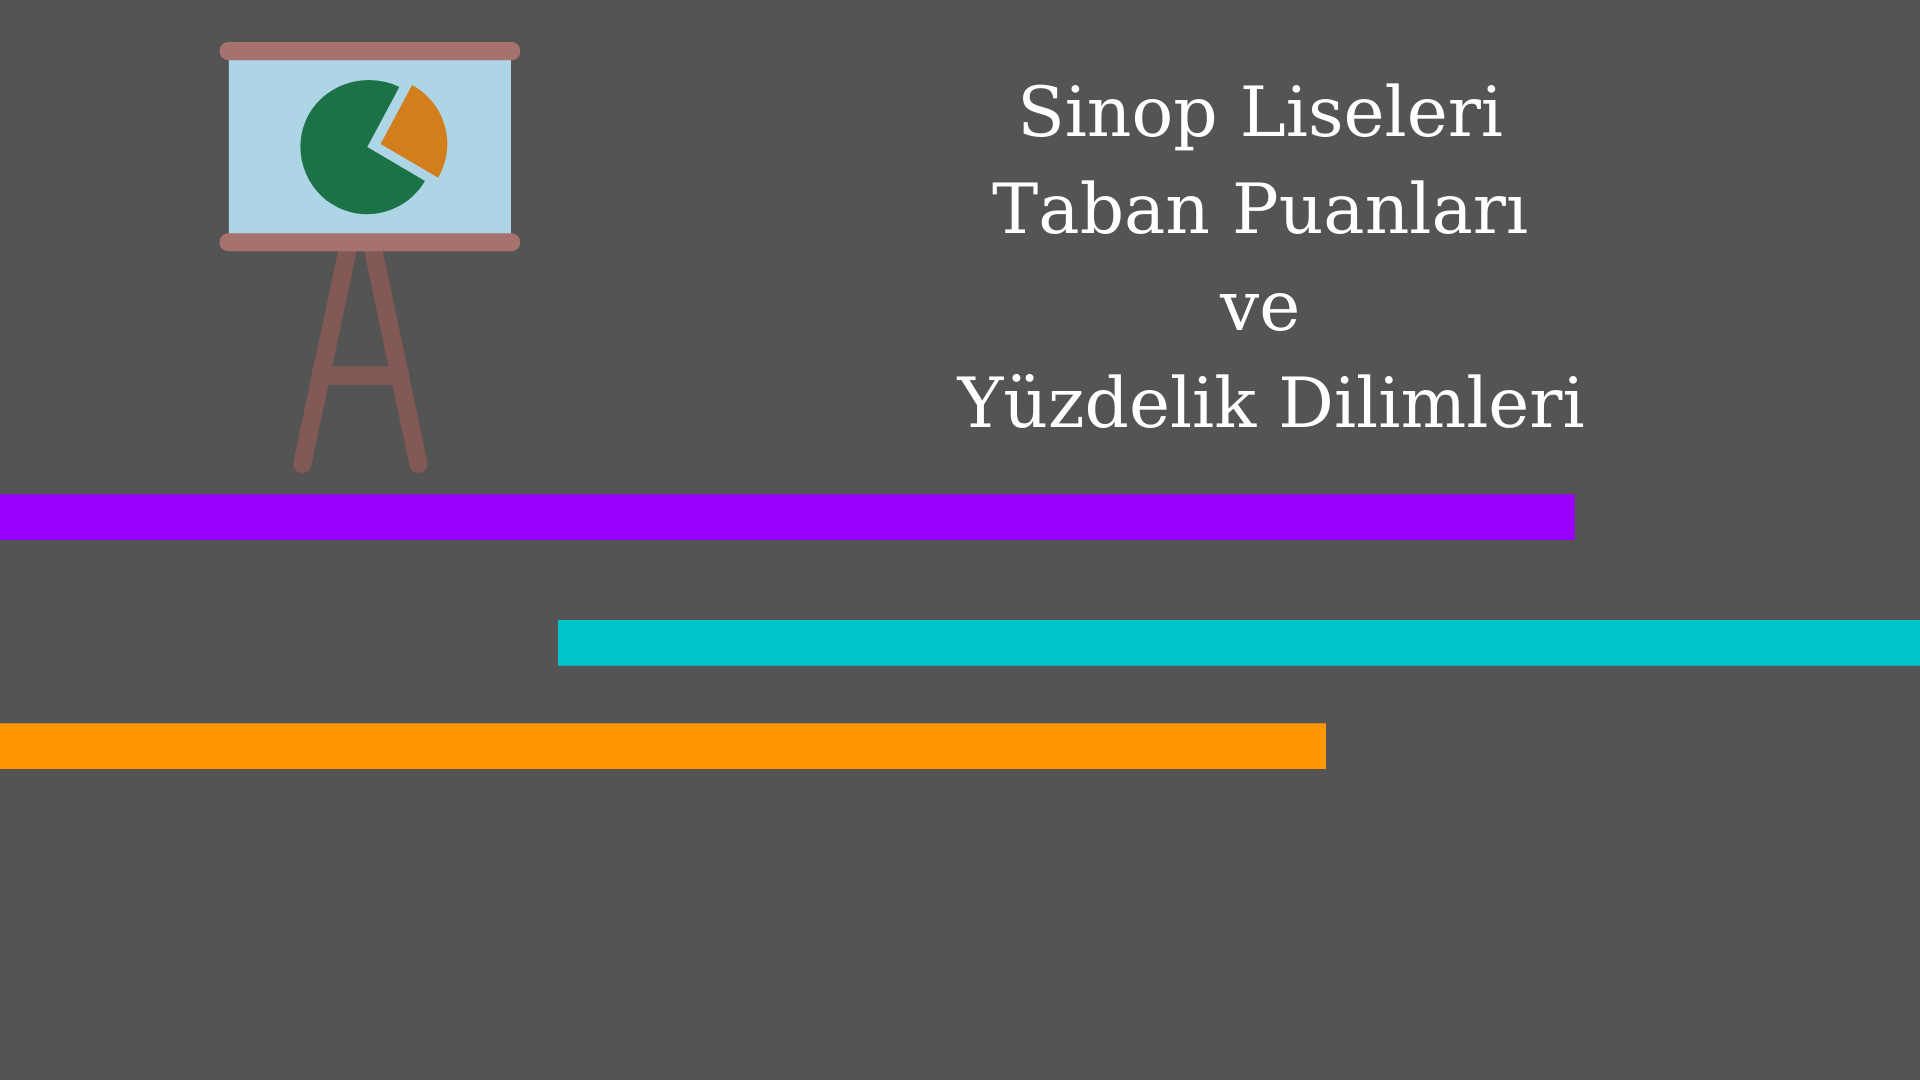 Sinop Liseleri Taban Puanları ve Yüzdelik Dilimleri 2021